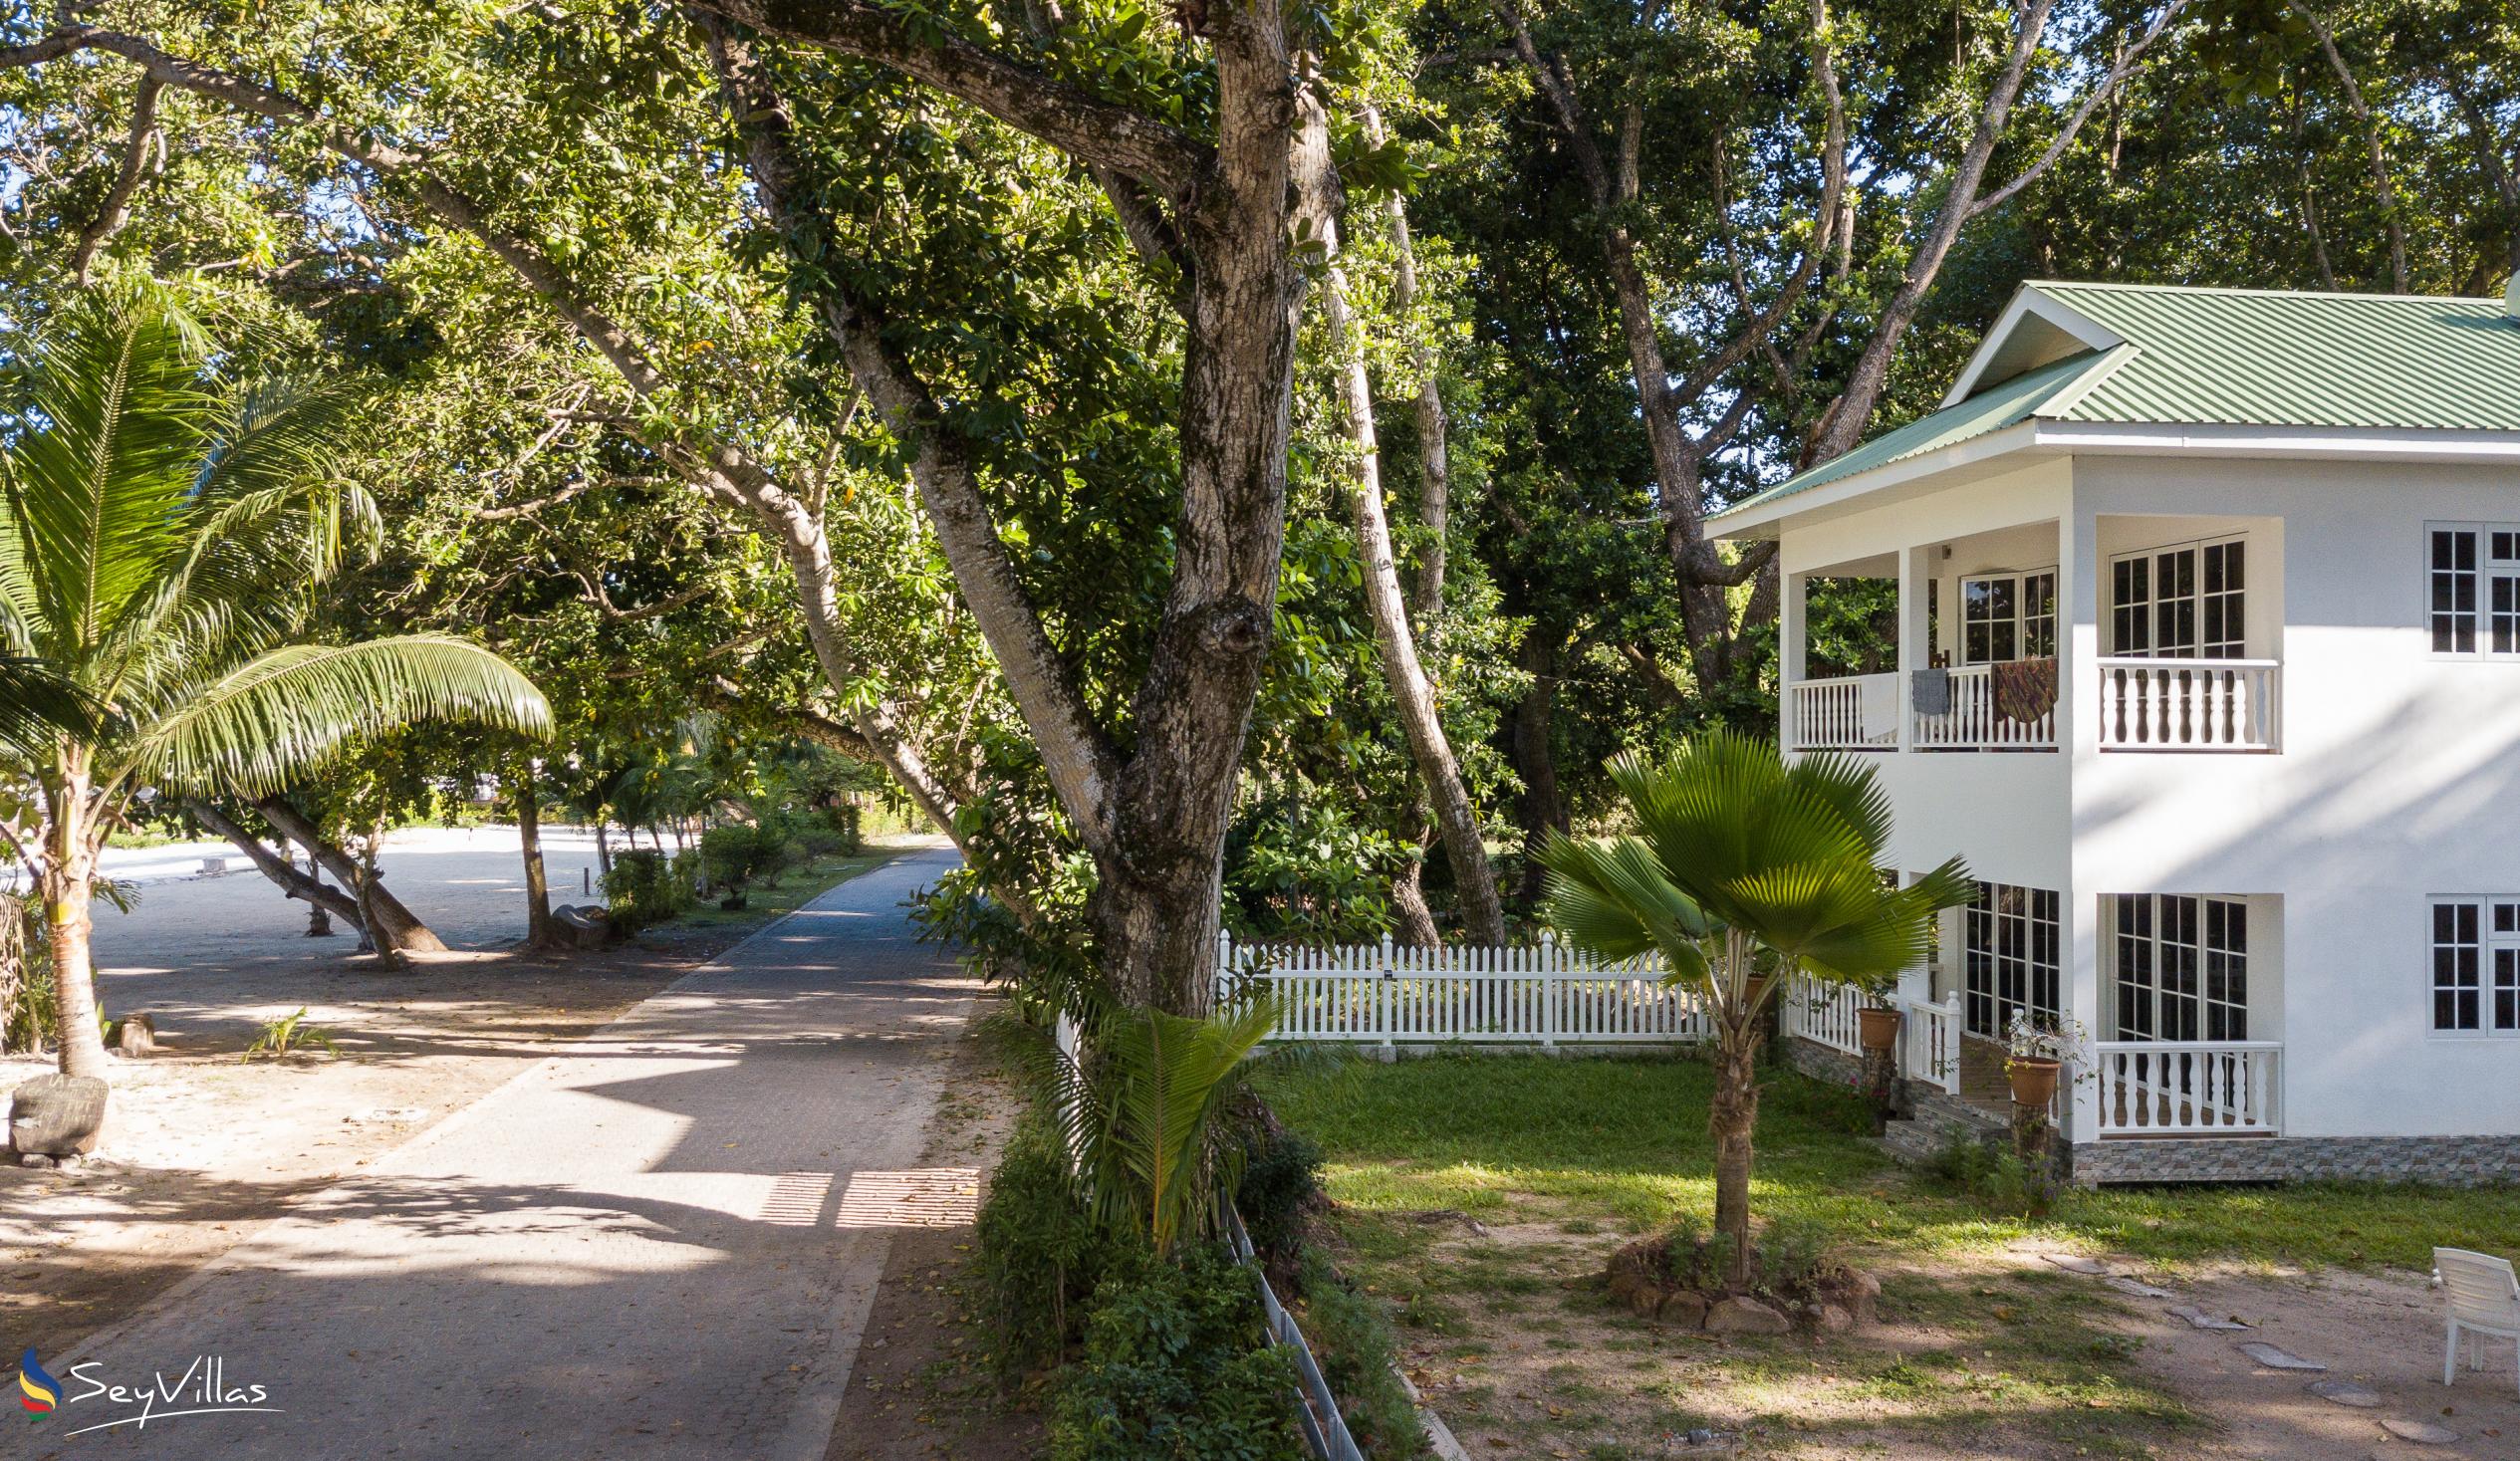 Foto 6: Villa Charette - Extérieur - La Digue (Seychelles)